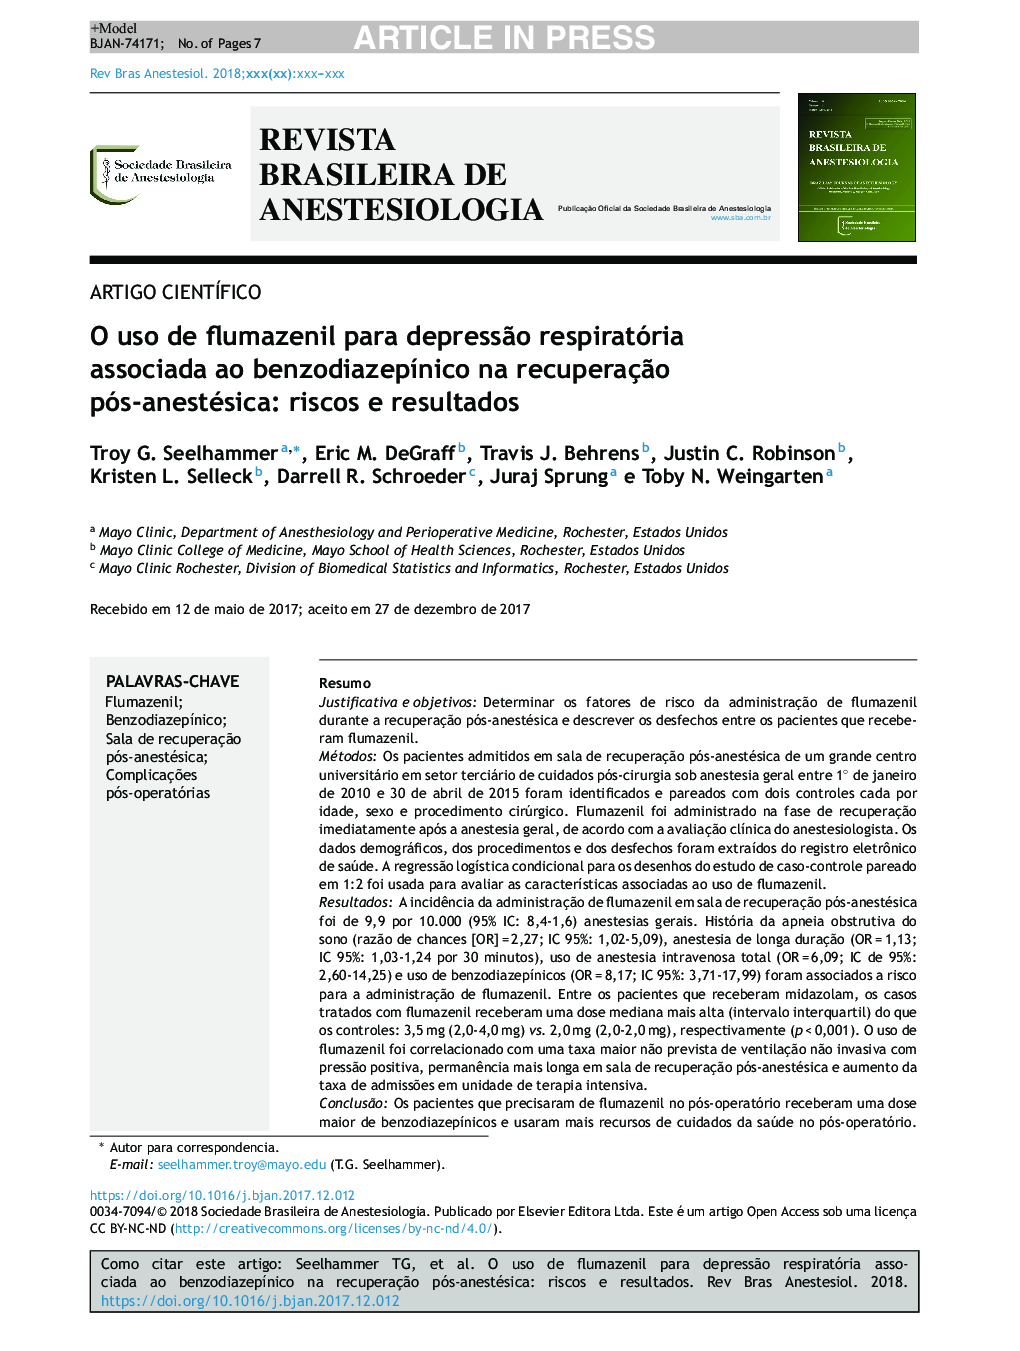 O uso de flumazenil para depressÃ£o respiratória associada ao benzodiazepÃ­nico na recuperaçÃ£o pósâanestésica: riscos e resultados